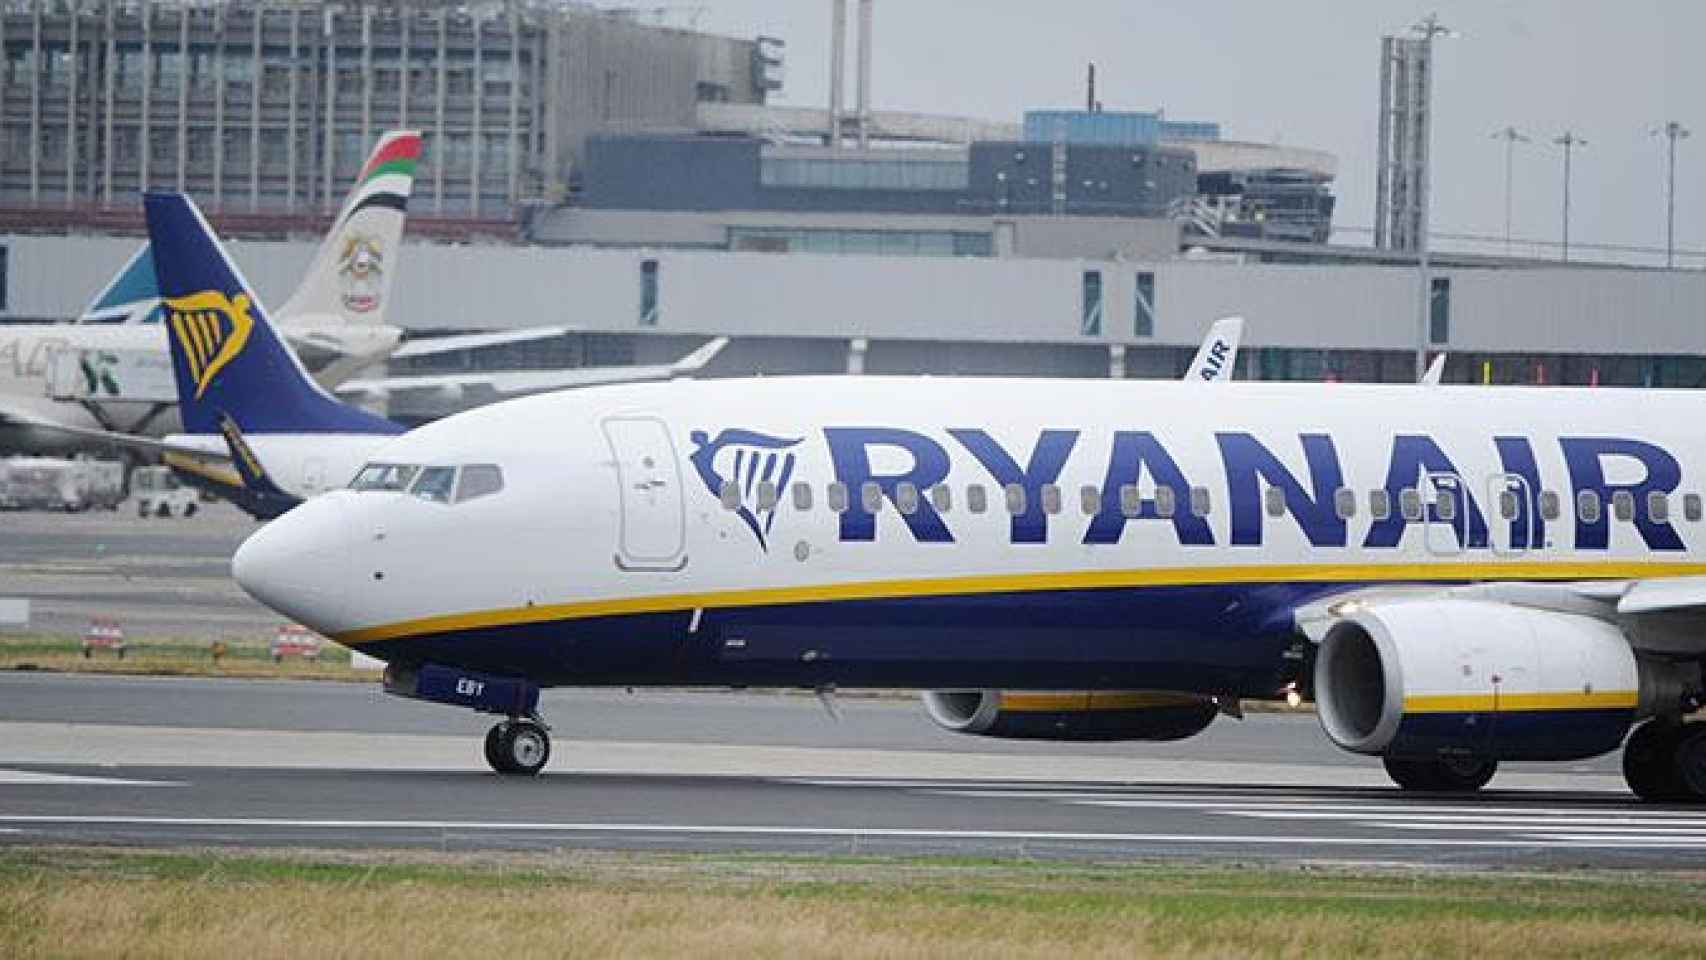 Un avión de Ryanair en la pista de un aeropuerto, en una imagen de archivo / EFE